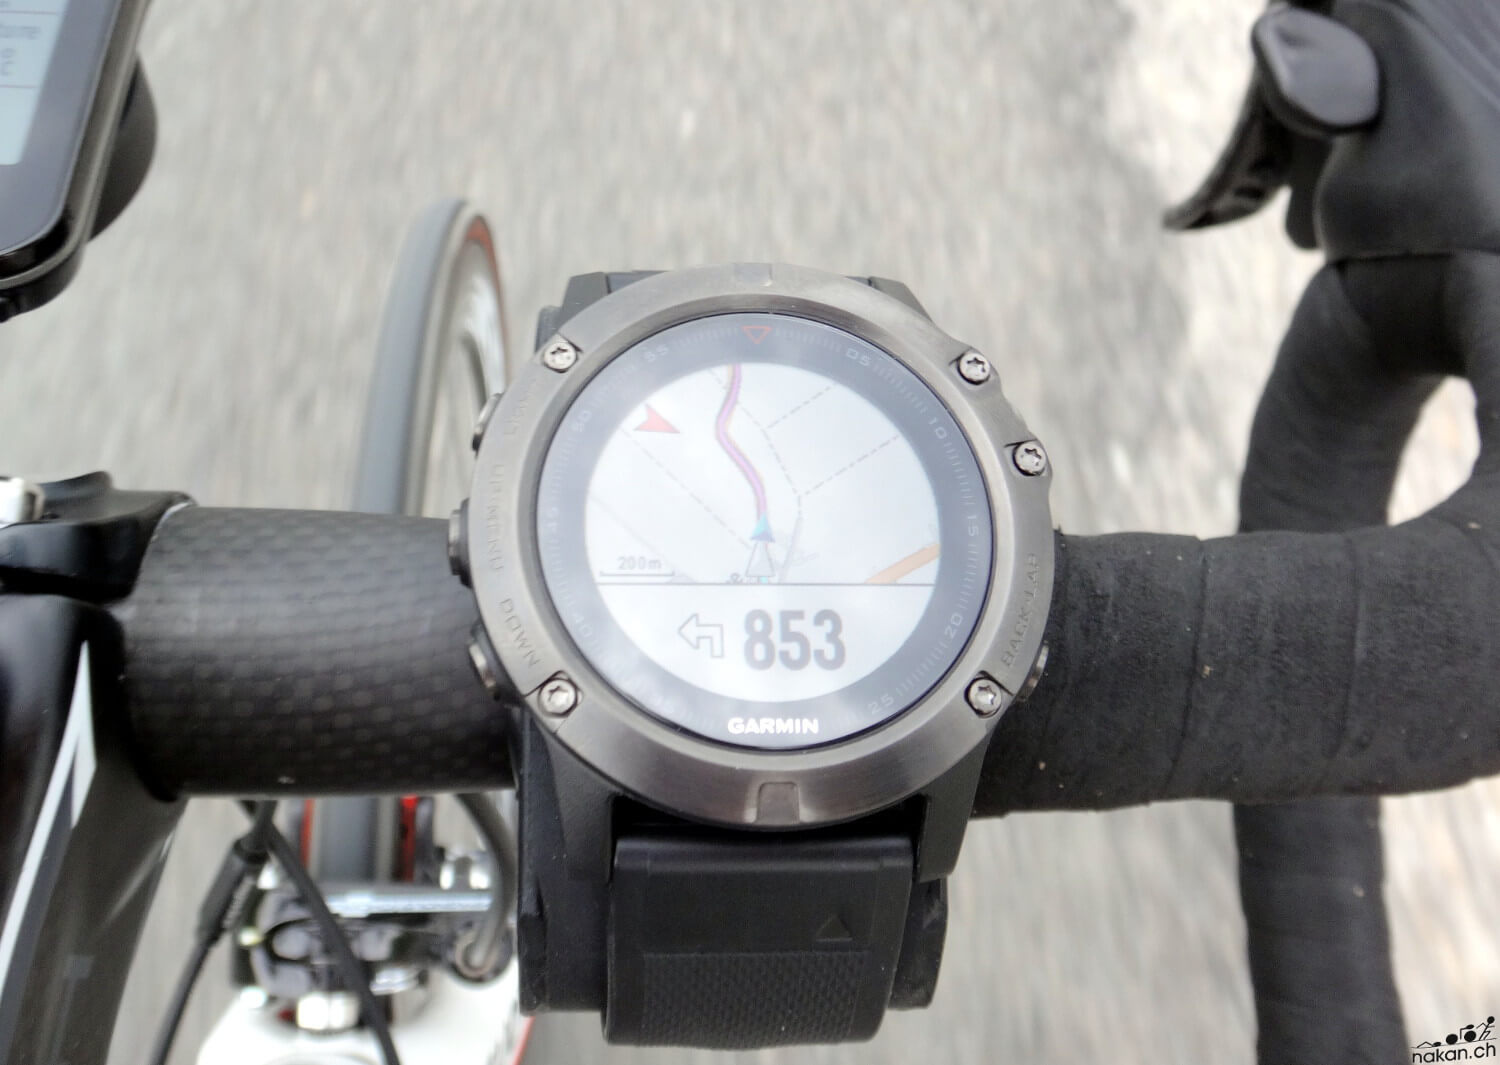 GPS vélo - Navigation pour vélo - Pour vélo/VTT/Vélo de route